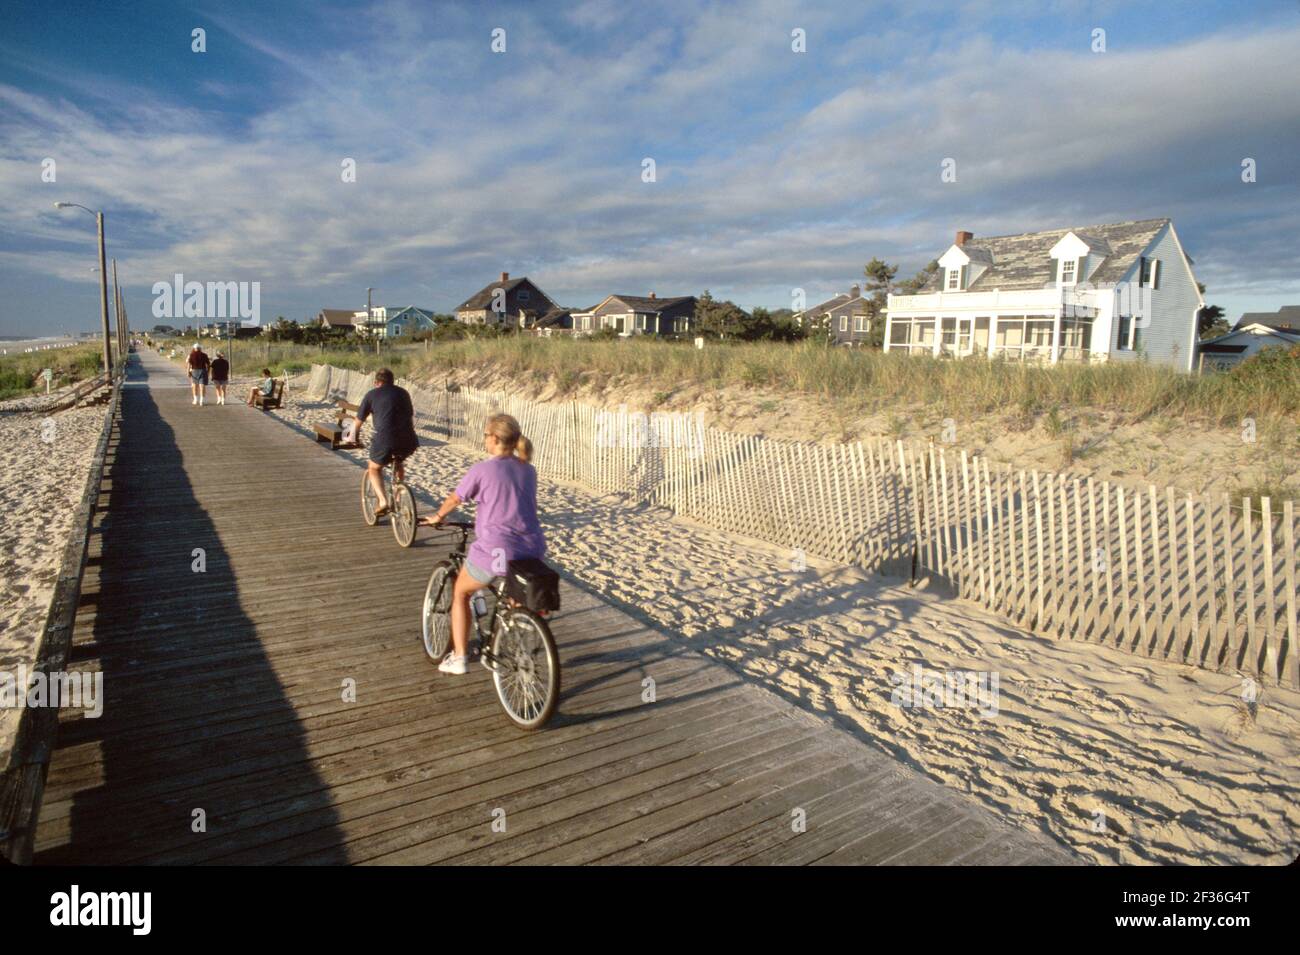 Delaware Rehoboth Beach boardwalk biciclette bicicletta equitazione uomo donna femmina coppia, spiaggia pubblica affitto case vacanze oceano Atlantico spiaggia spiaggia Foto Stock